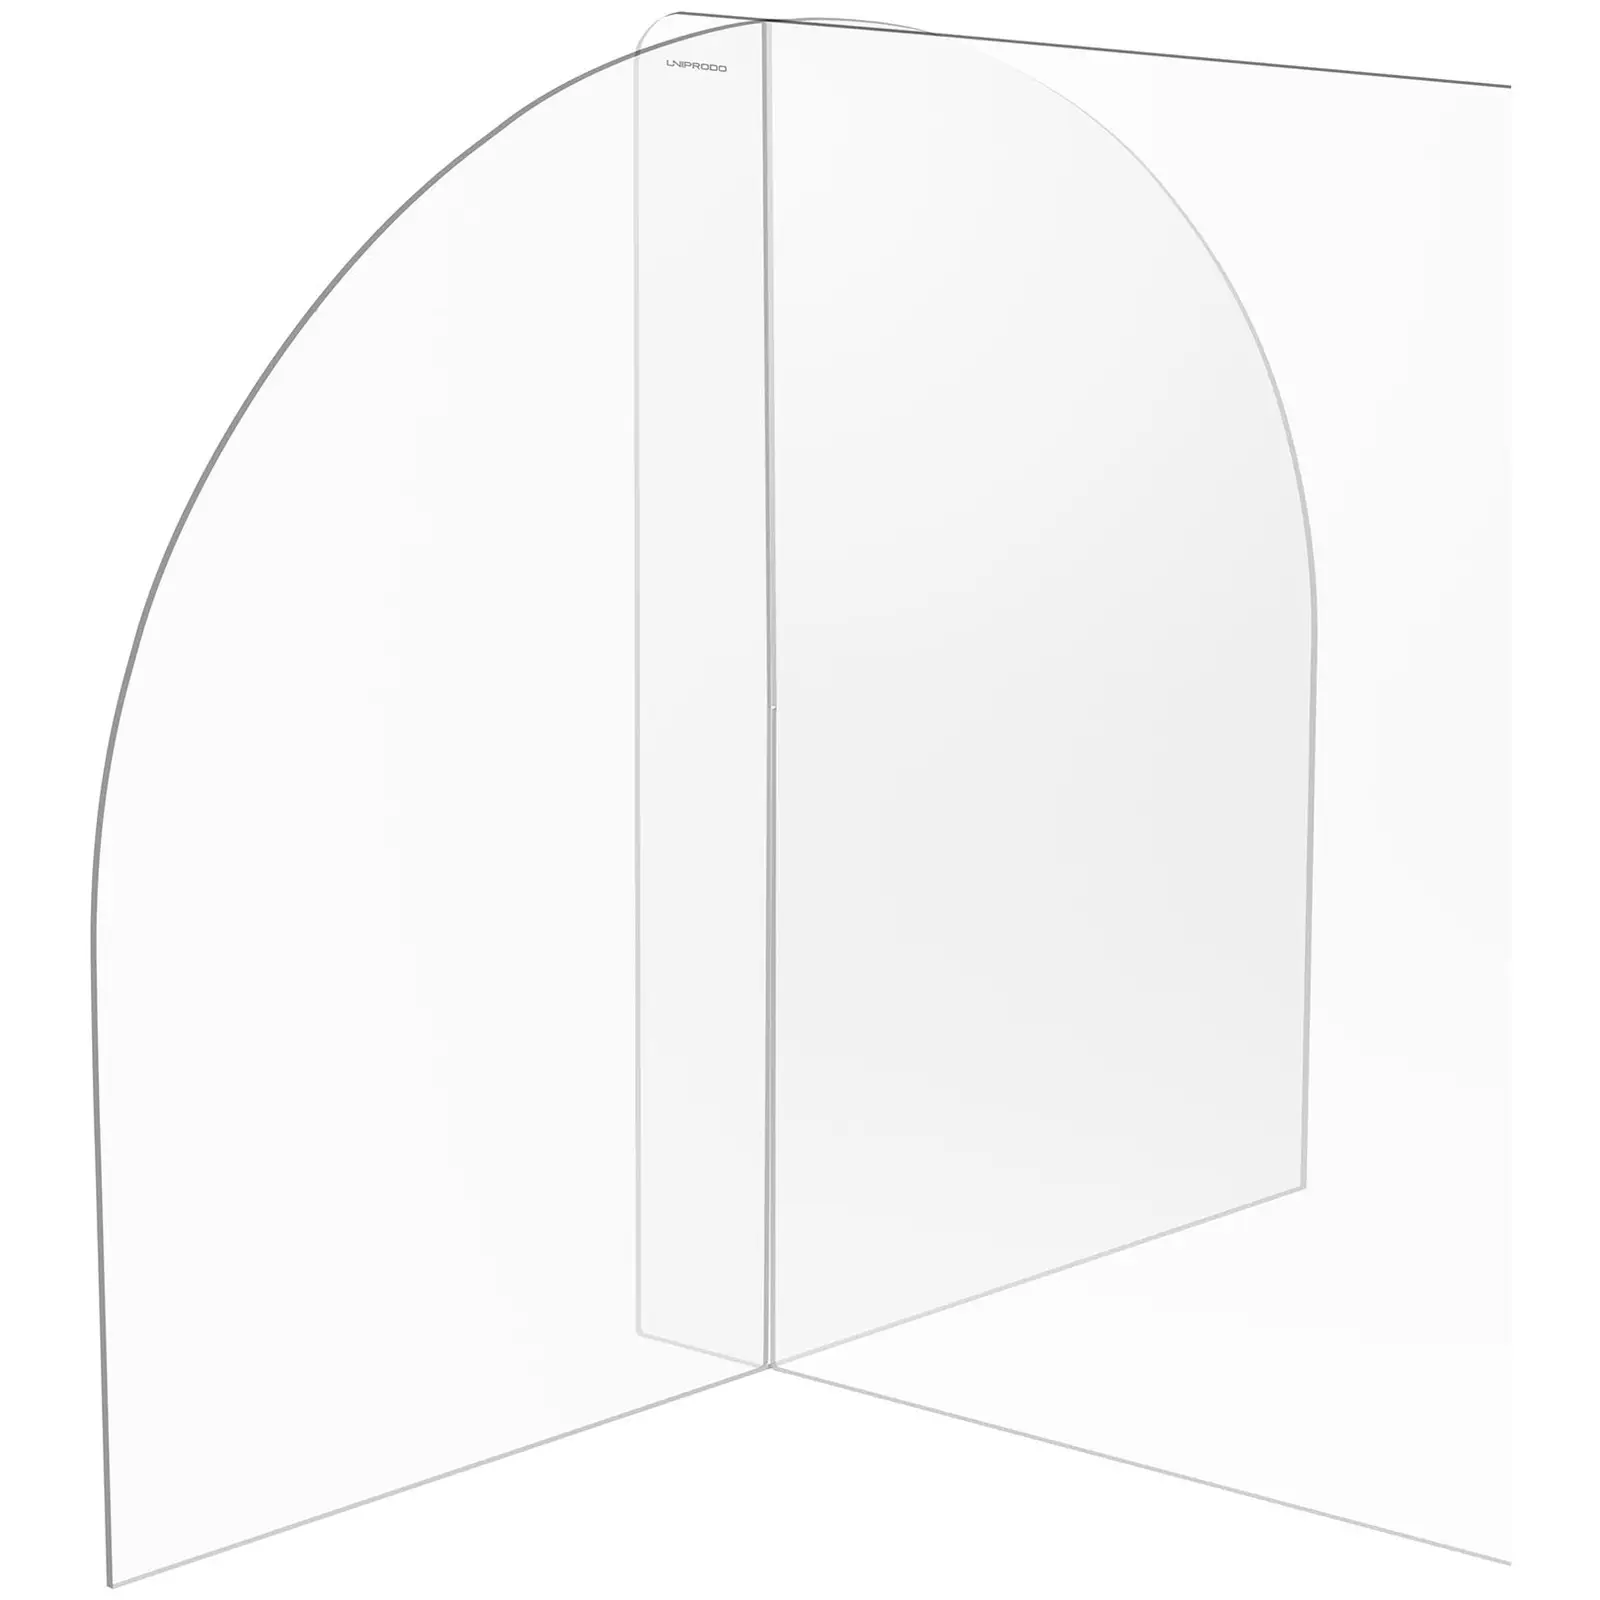 Parafiato in plexiglass - 80 x 60 cm - Vetro acrilico - Apertura: 25 x 12 cm